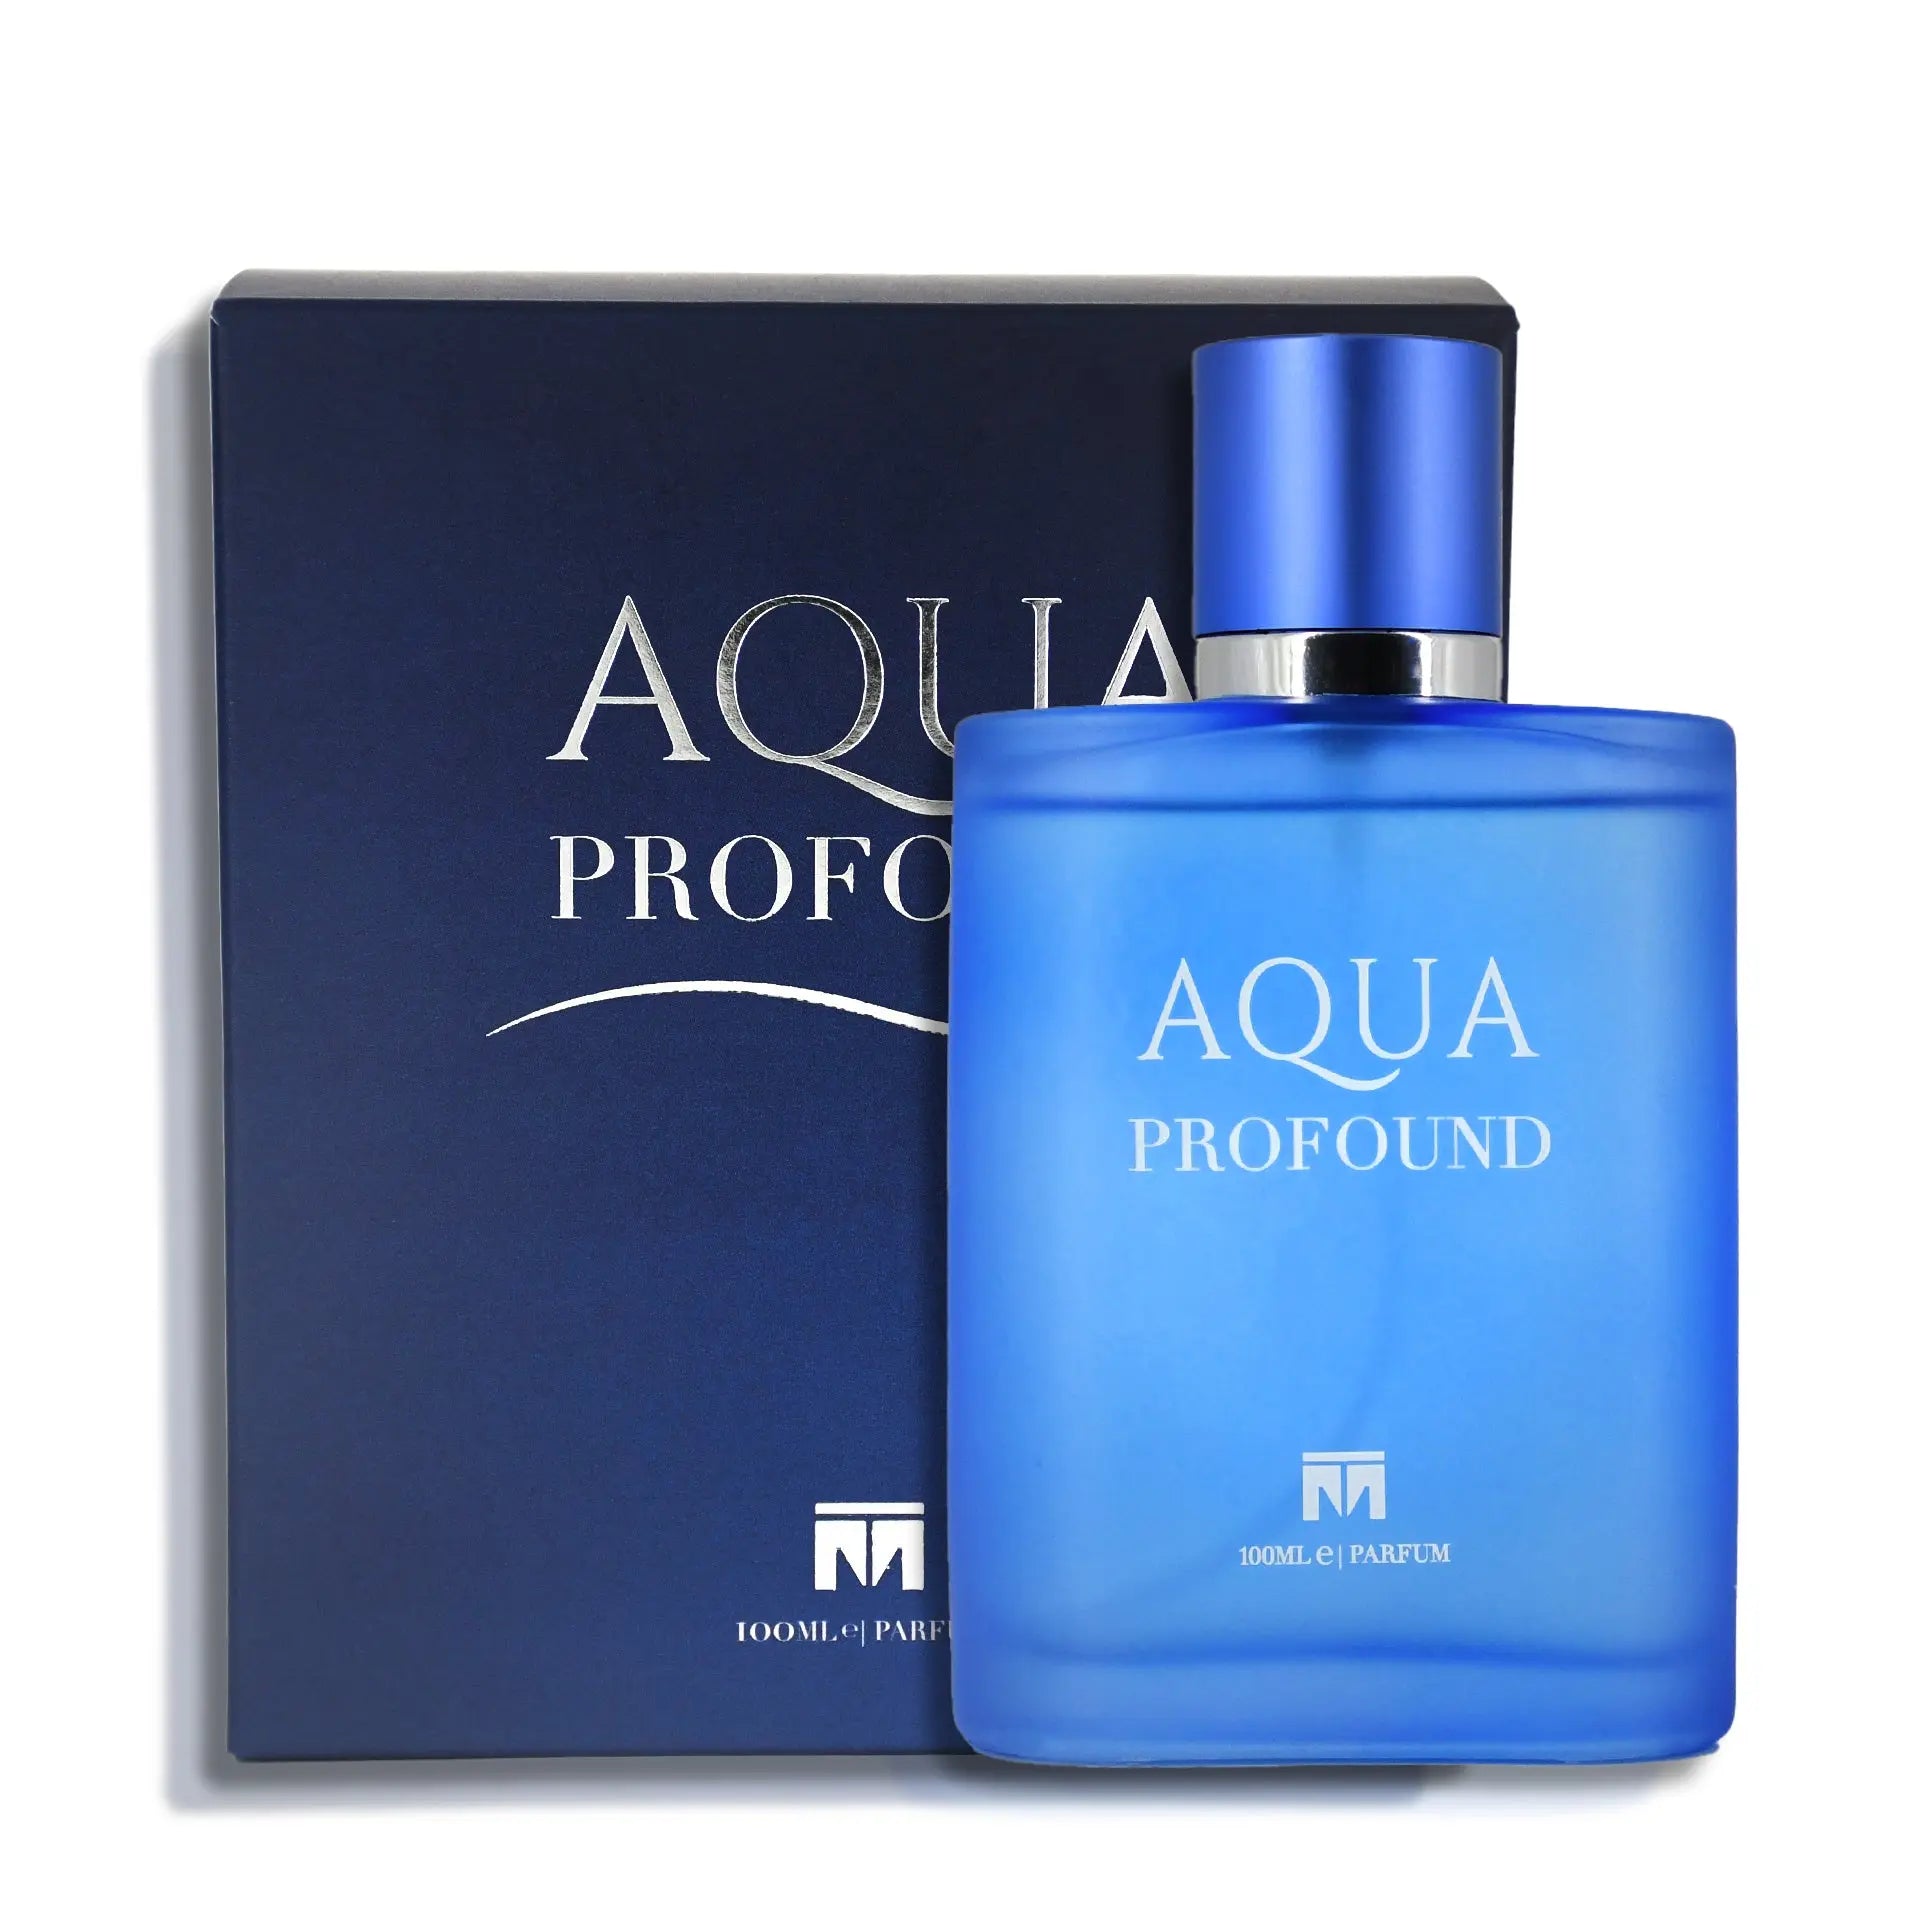 Aqua Profound - 100ml Parfum - Dapper Industries SA